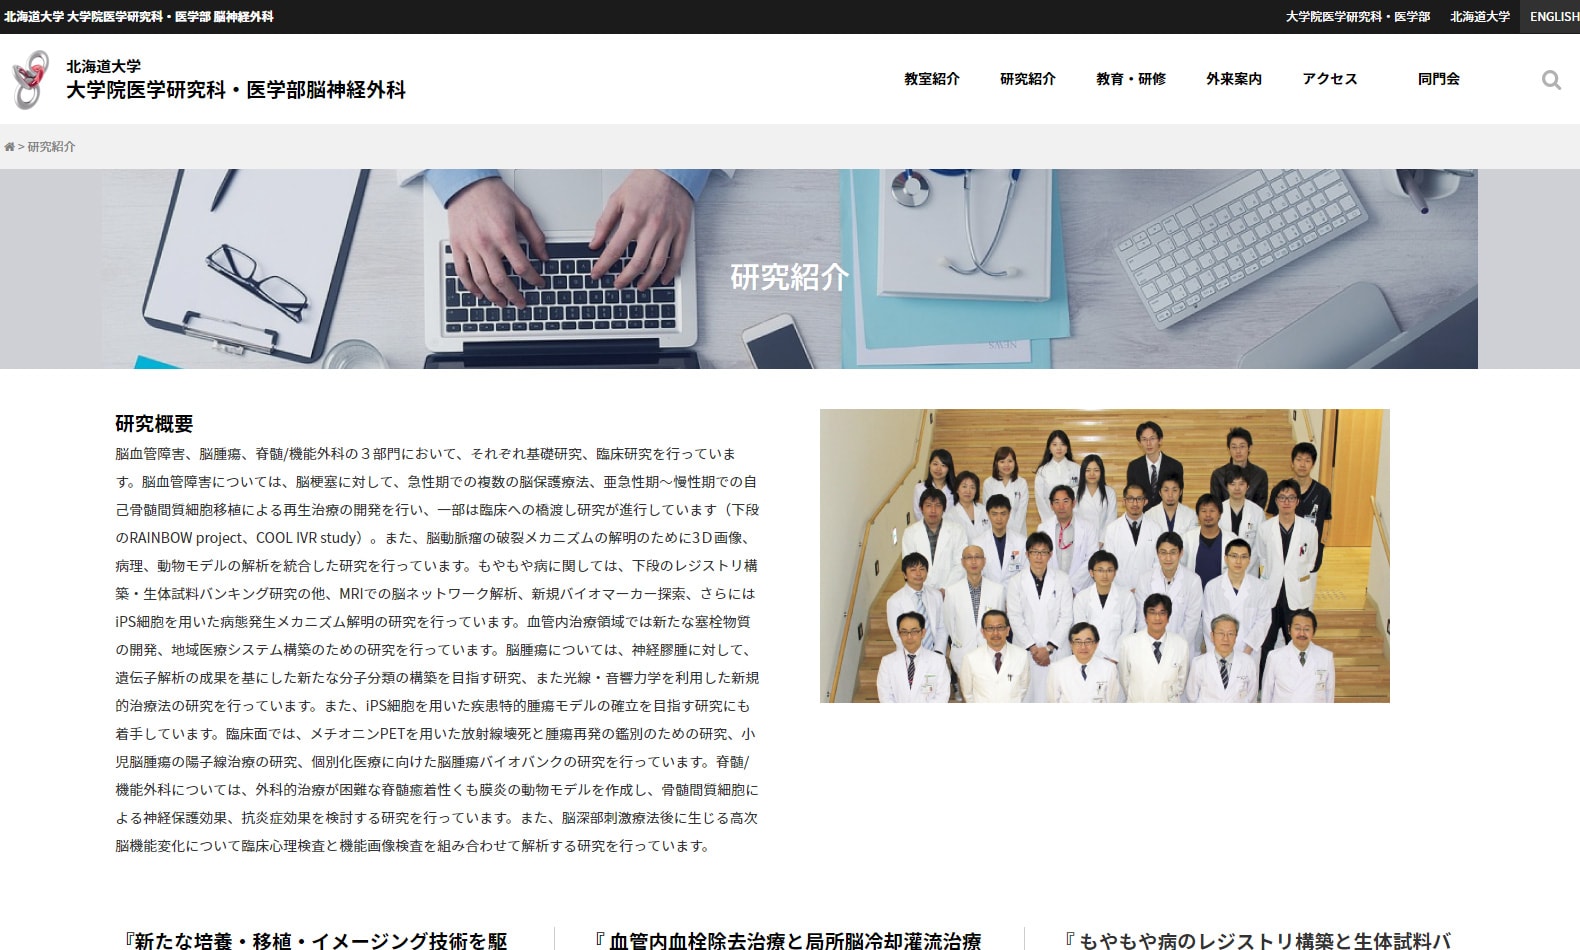 「北海道大学 大学院医学研究科・医学部 脳神経外科」様サイトのページ画像2